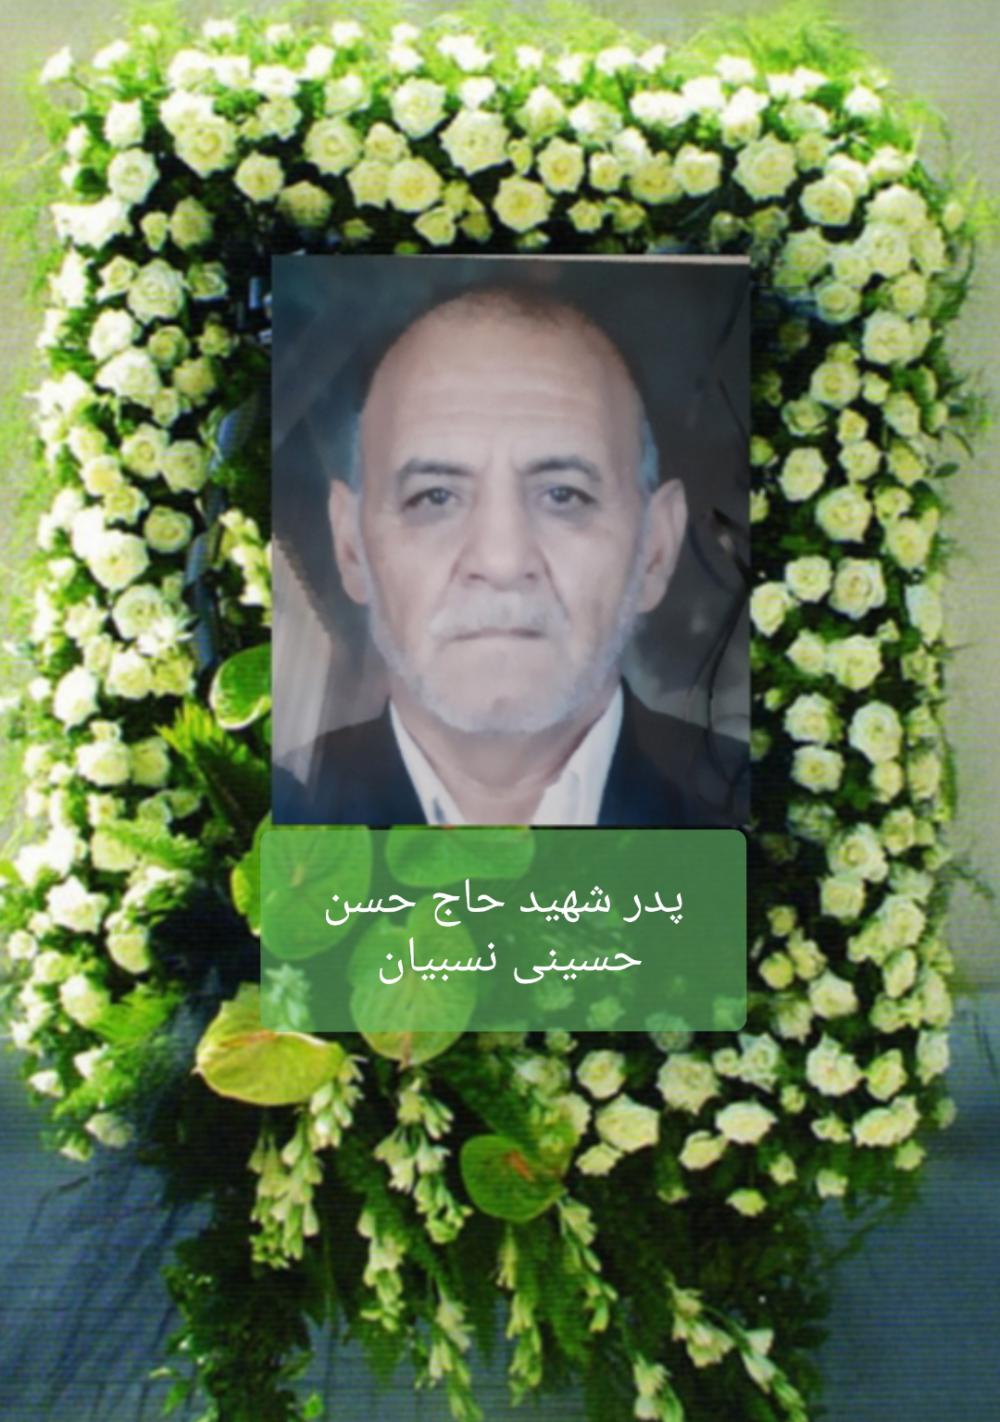  پدر شهید : حاج محمد حسینی نسبیان رفسنجانی